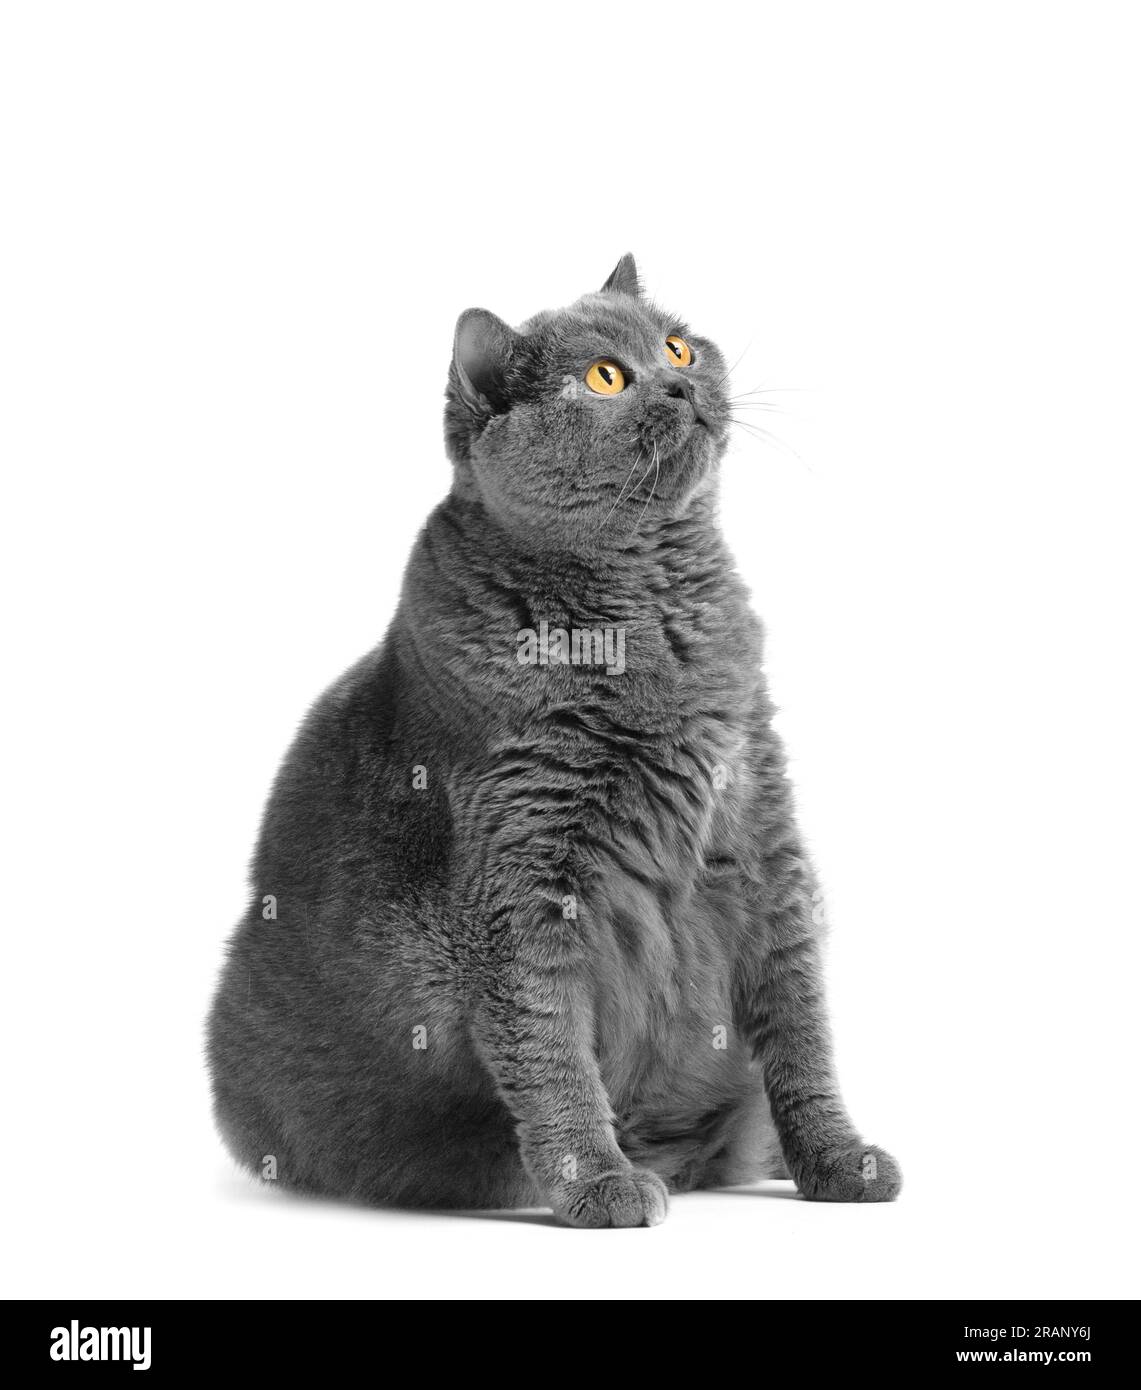 Un chat gras de shorthair avec de grands yeux rouges est assis sur un fond blanc. Obésité animale. Chat britannique sur fond blanc. Un grand chat de la race britannique Banque D'Images